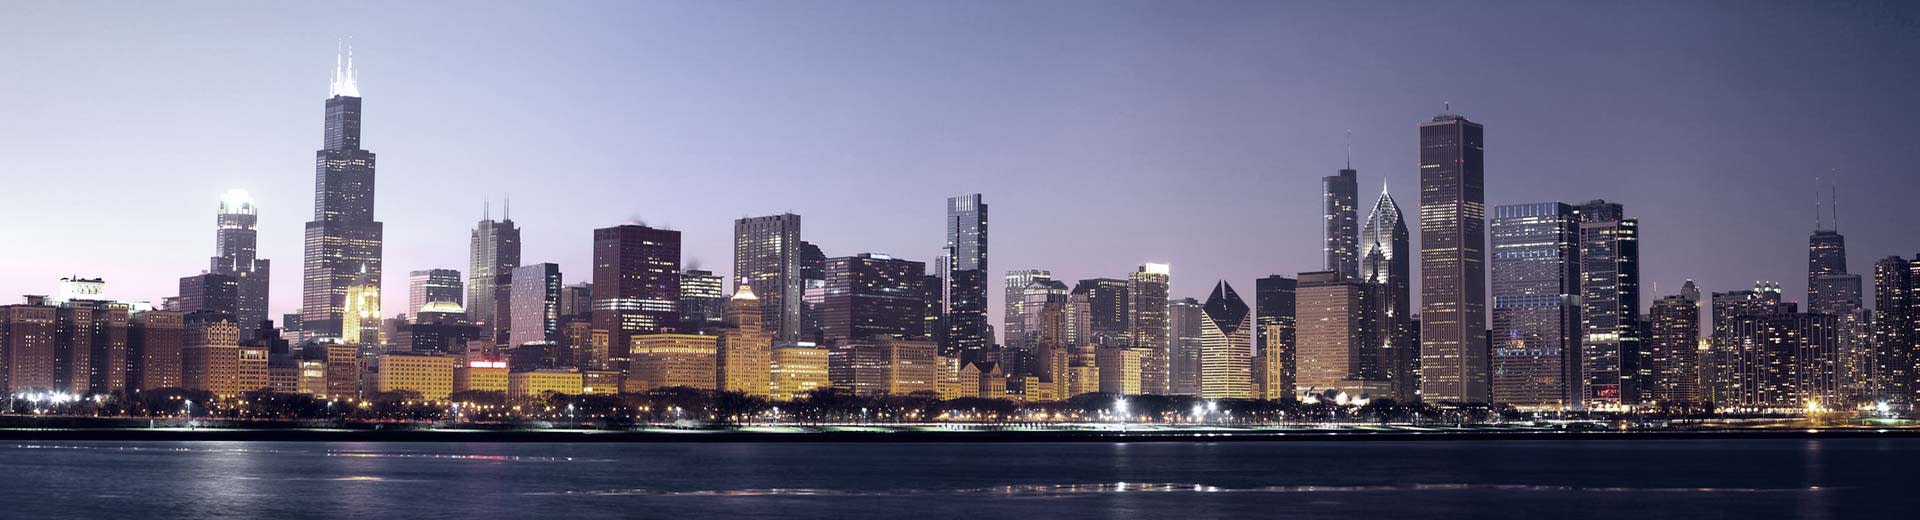 L'horizon de Chicago illumine le ciel au-dessus, de nombreux grands bâtiments sont silhouettés.